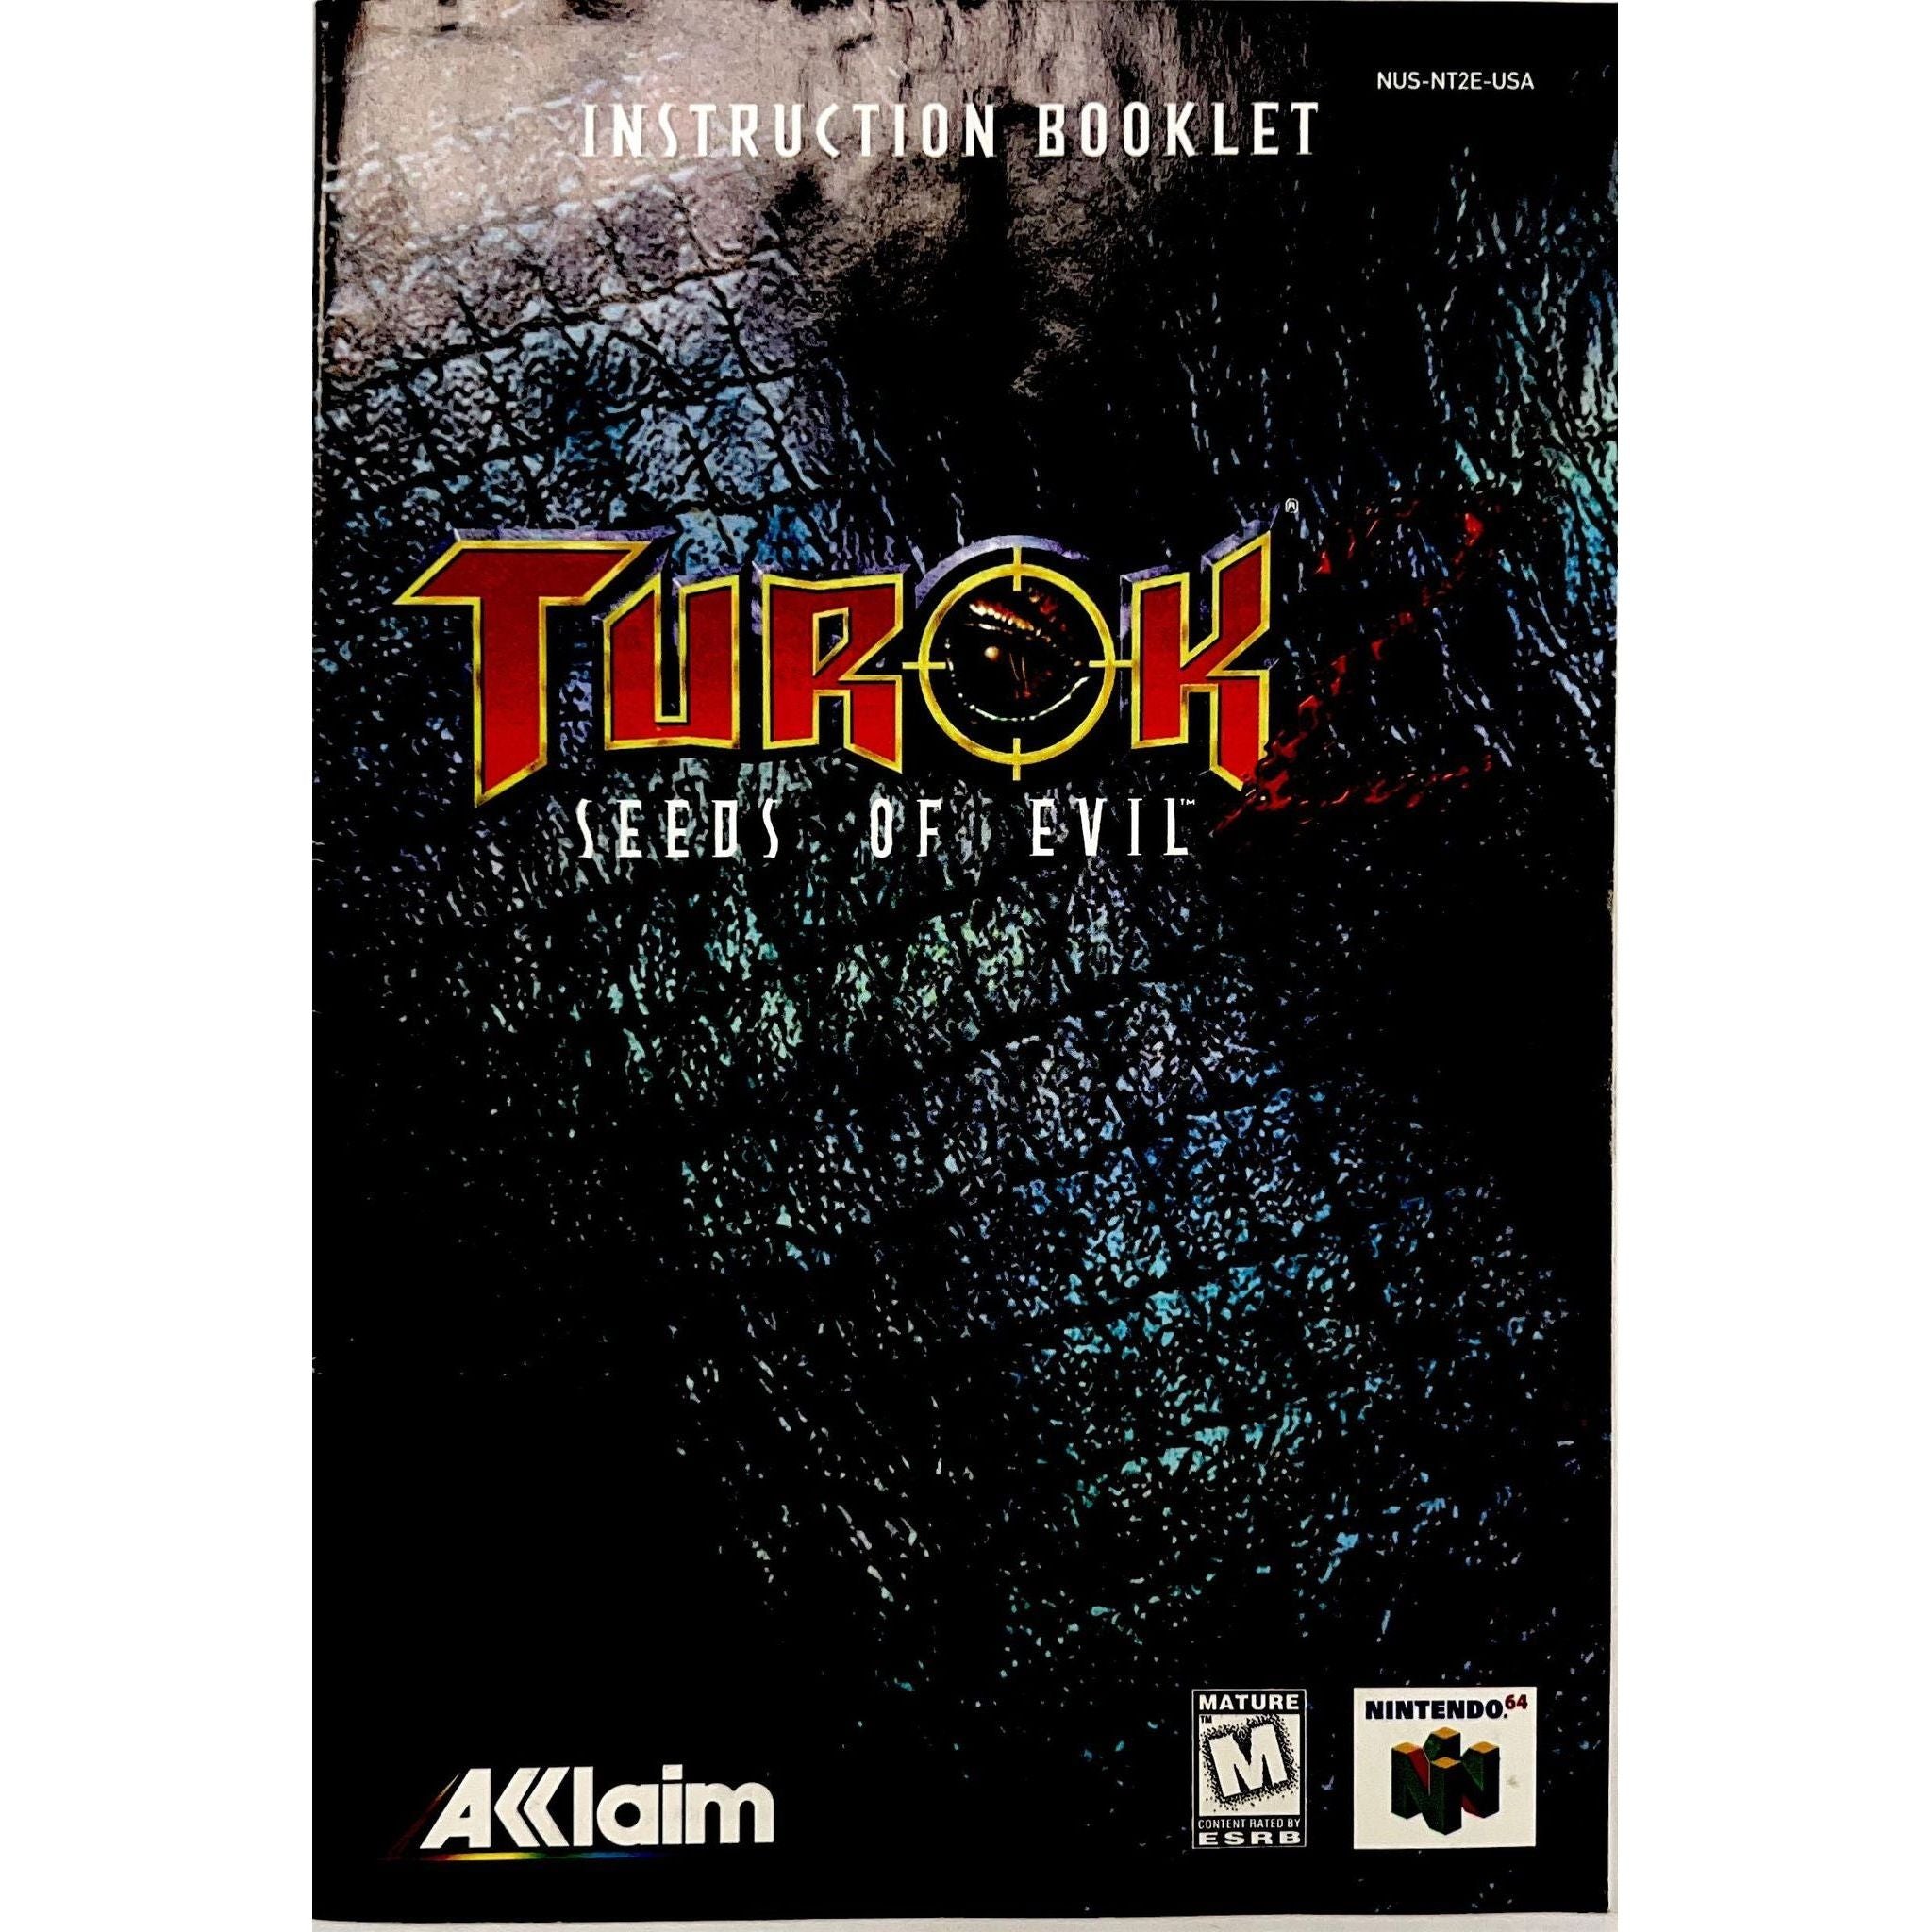 N64 - Turok 2 Seeds of Evil (Manual)